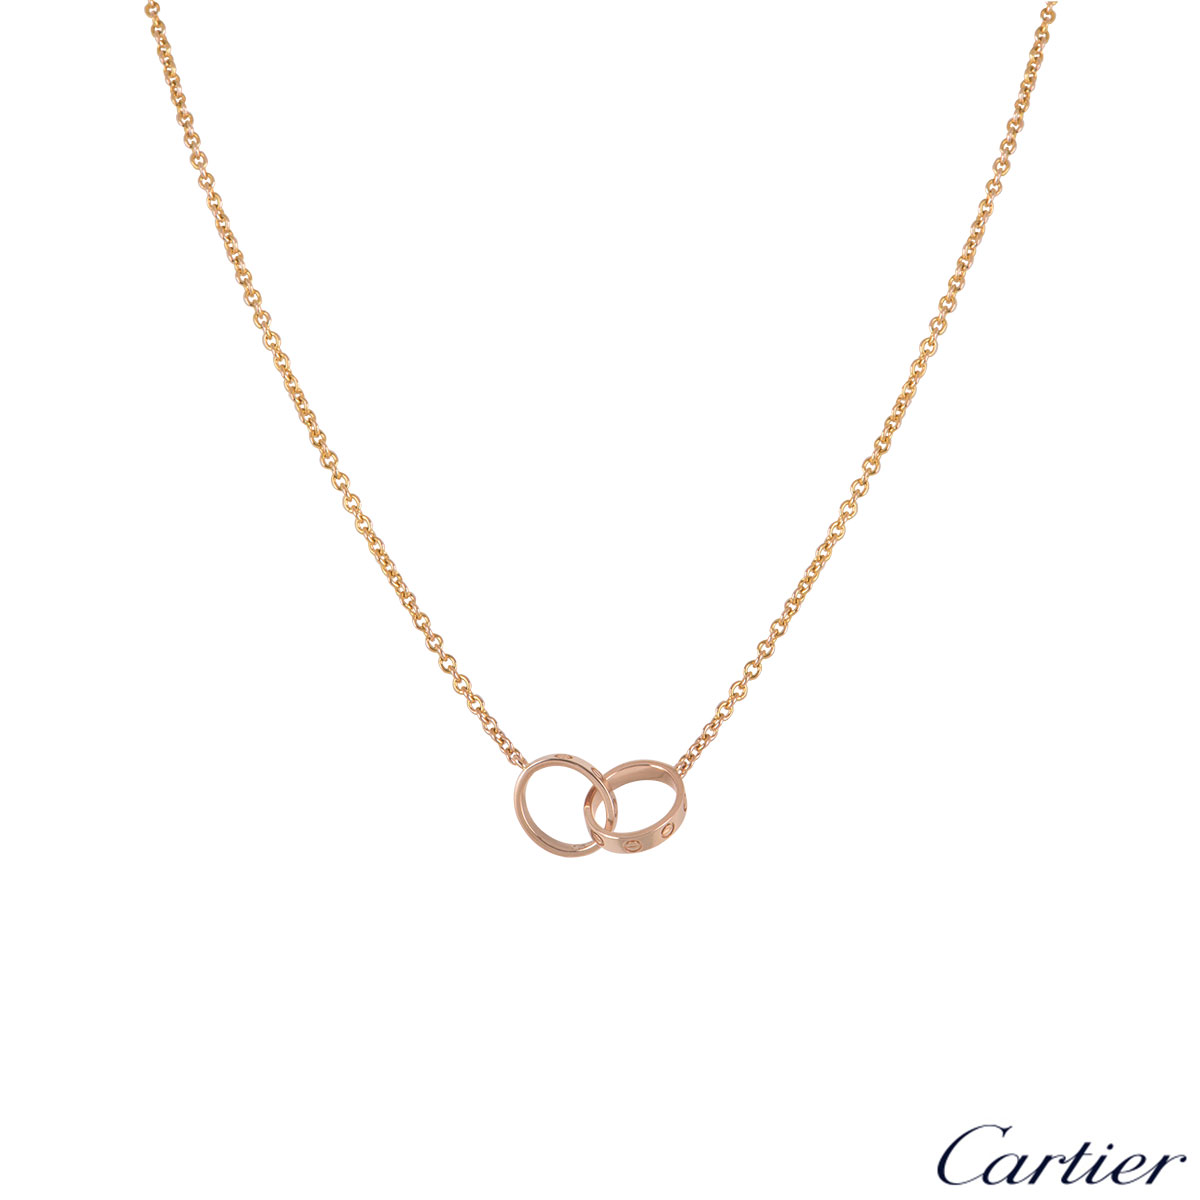 cartier necklace clasp